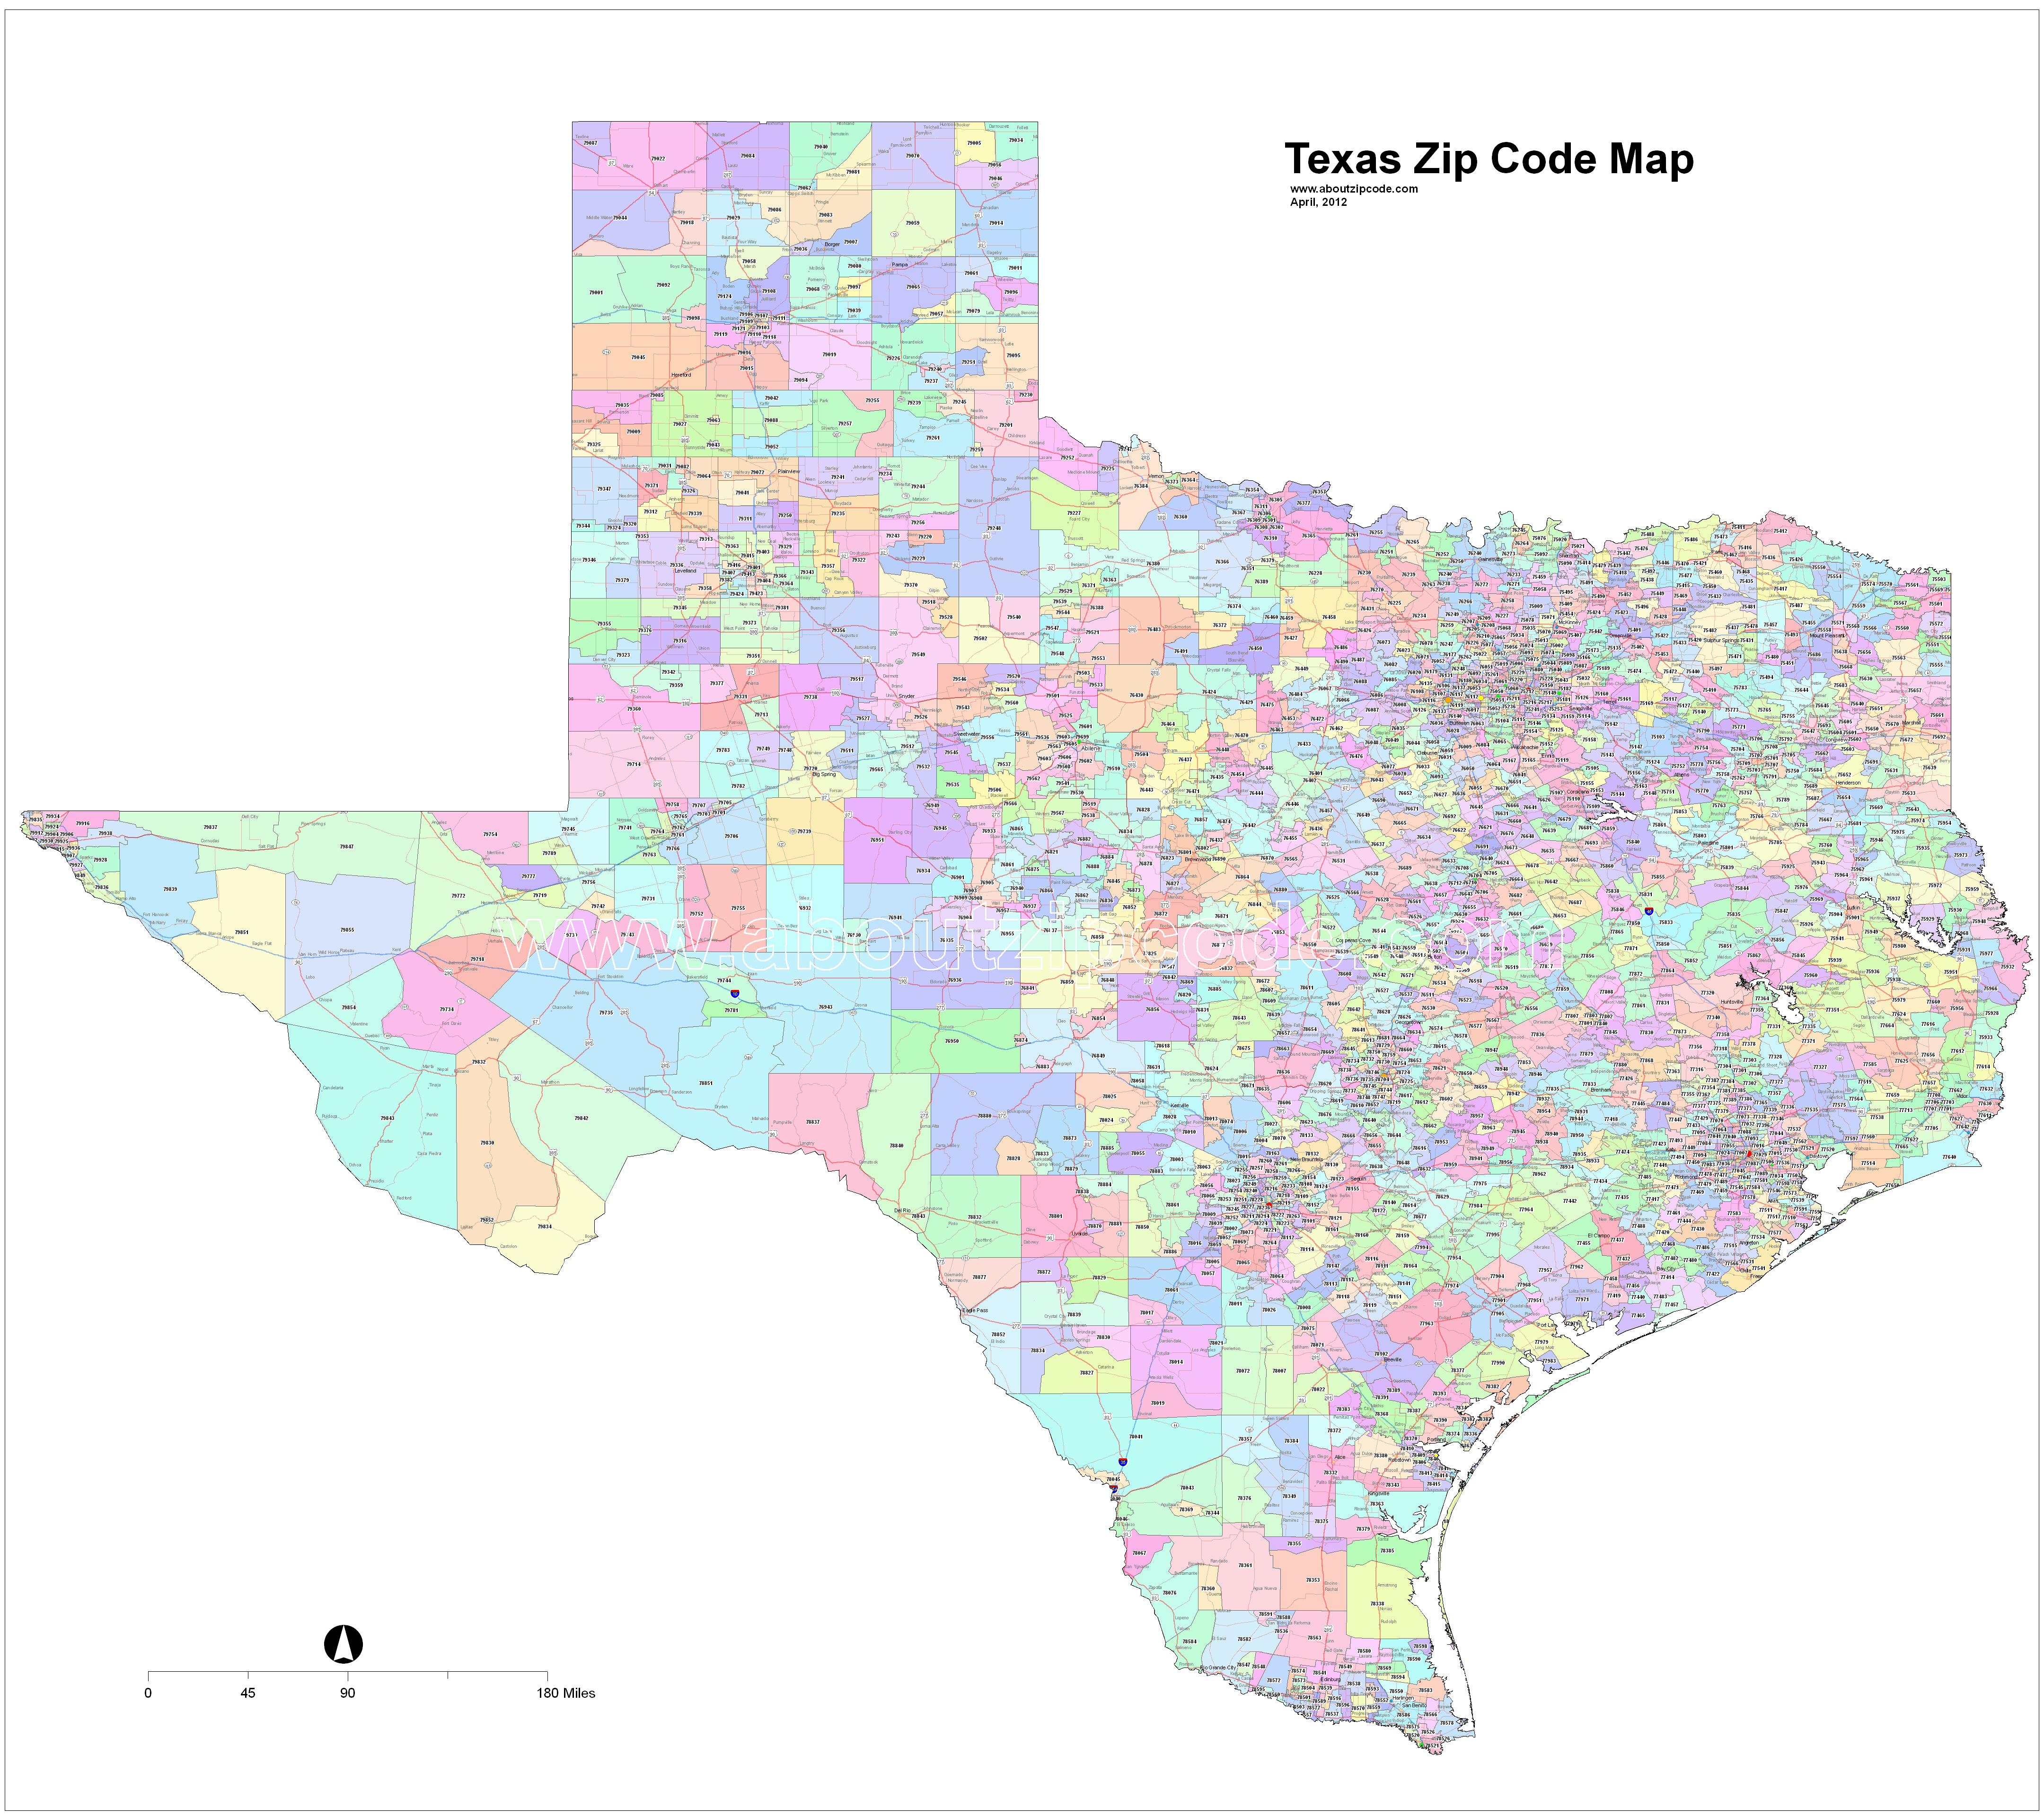 Texas Zip Code Maps Free Texas Zip Code Maps